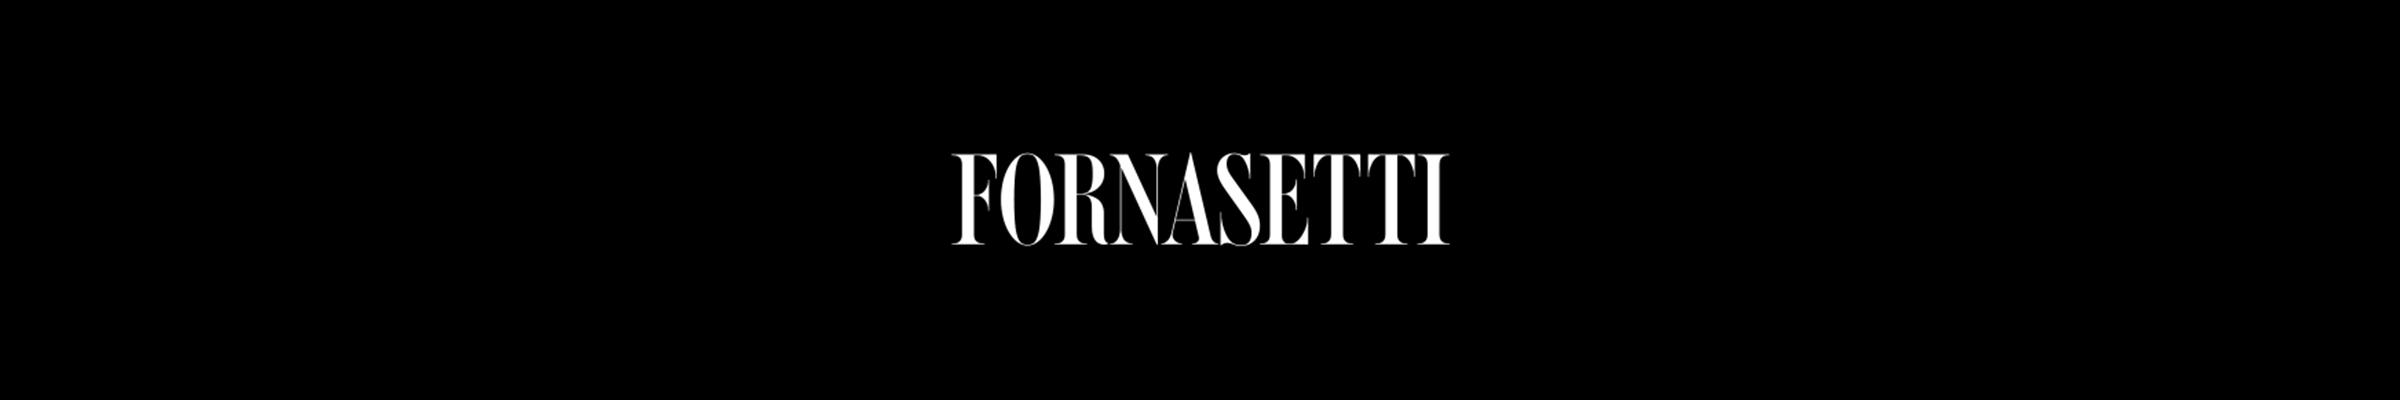 fornasetti-banner